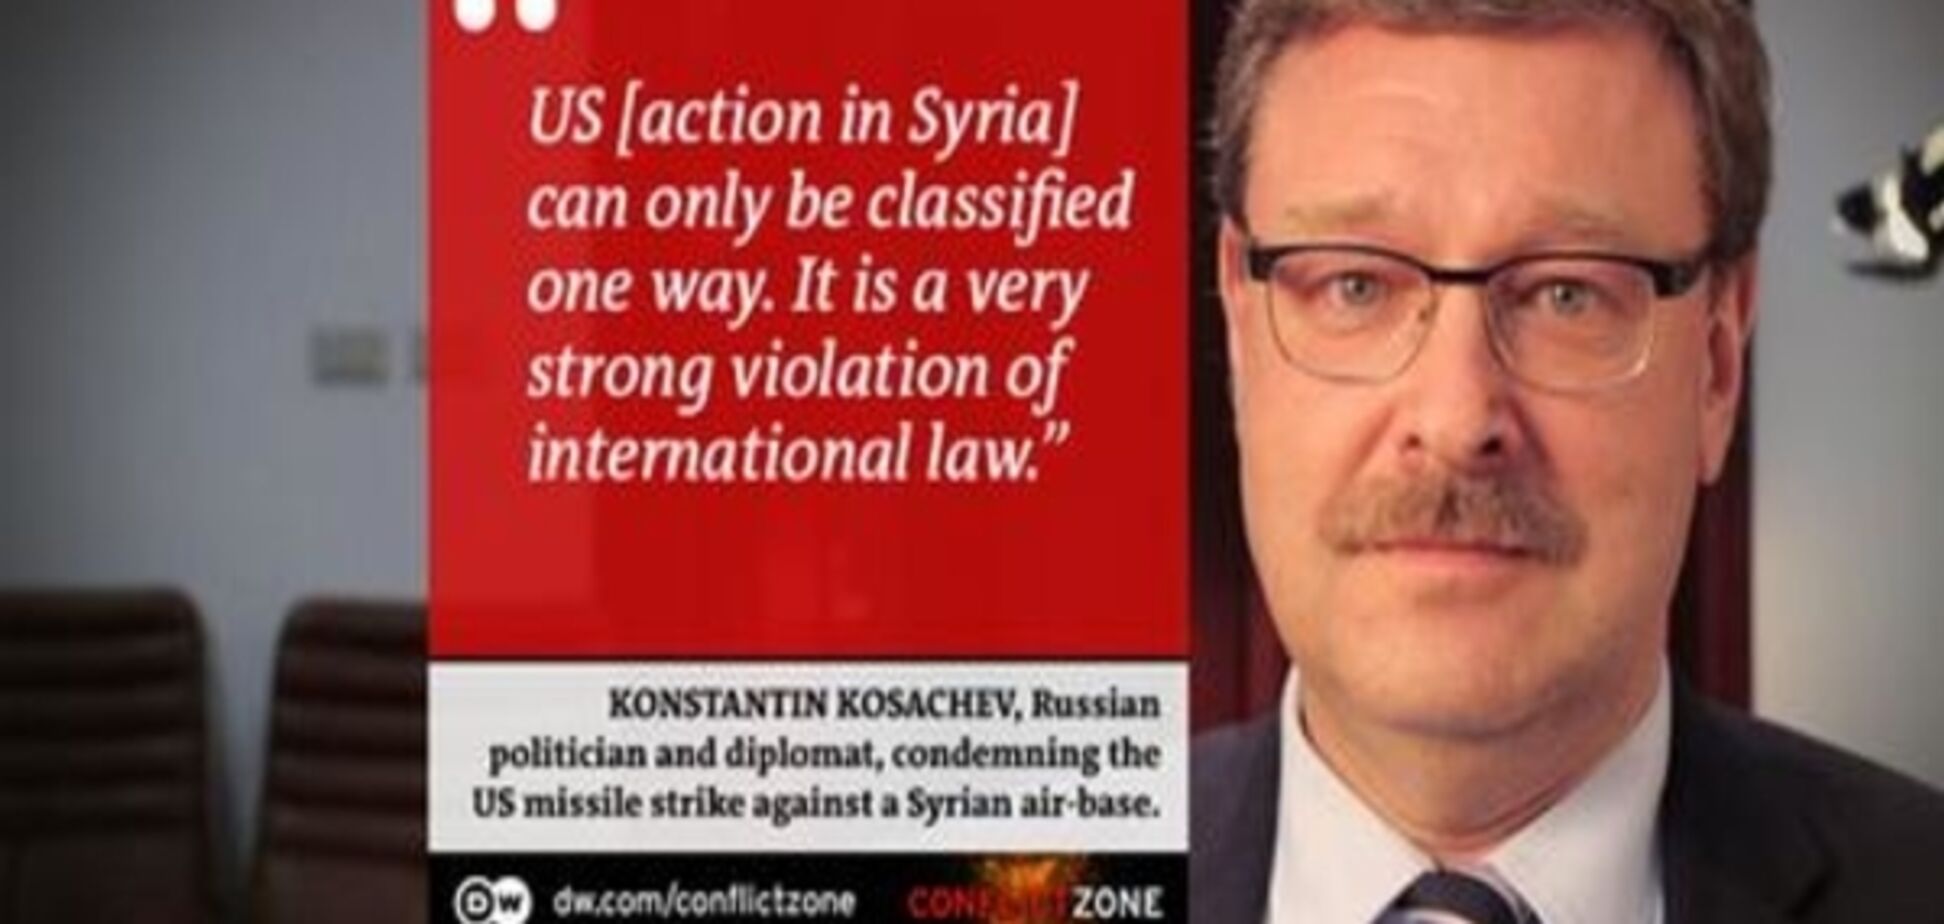 Голова комітету Ради Федерації РФ вважає тероризм головною проблемою в Сирії